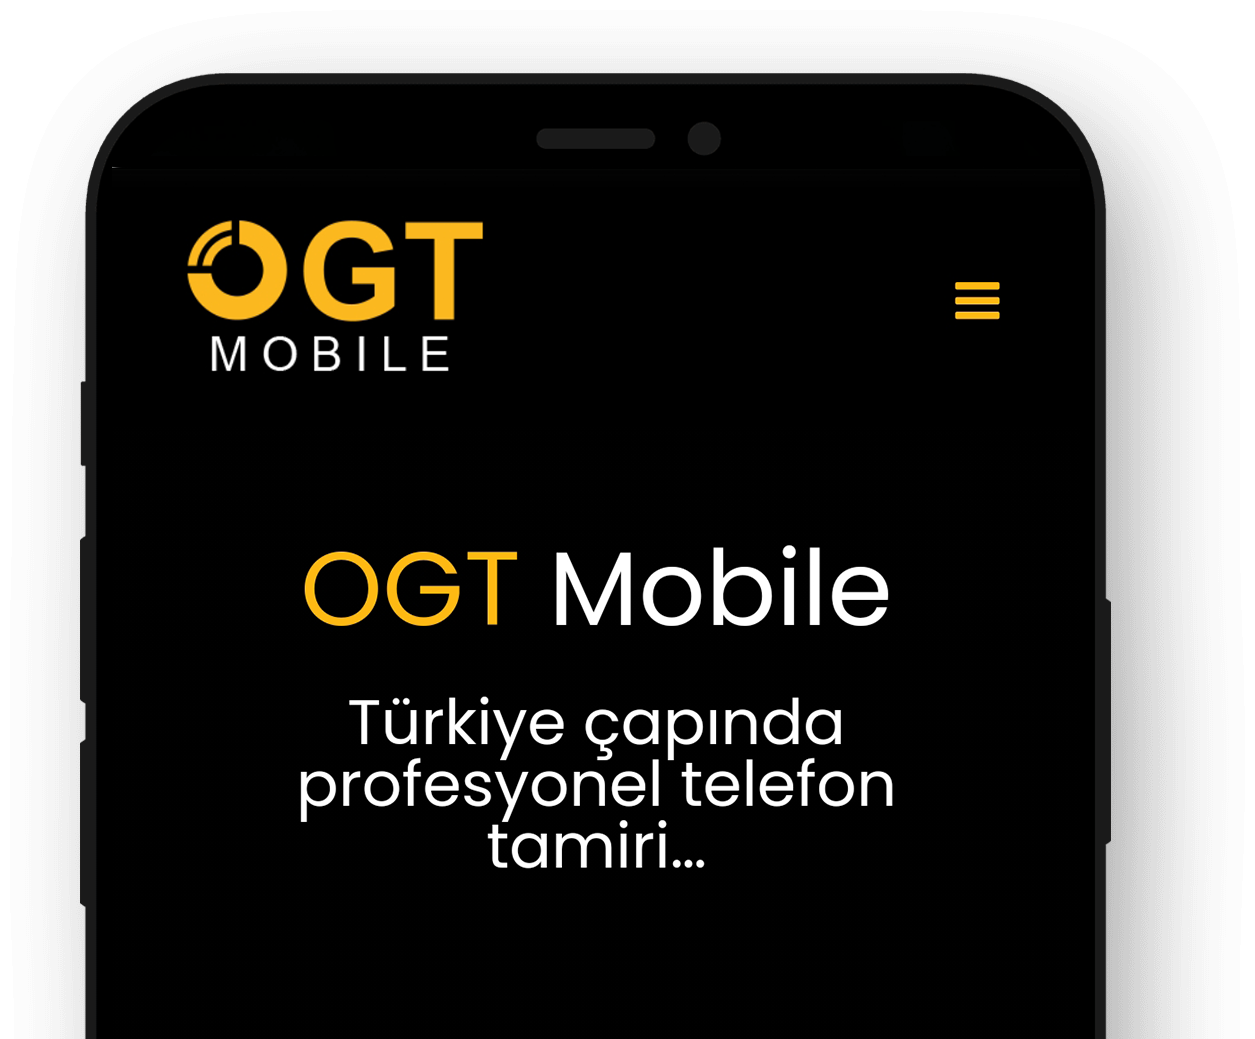 OGT Mobile